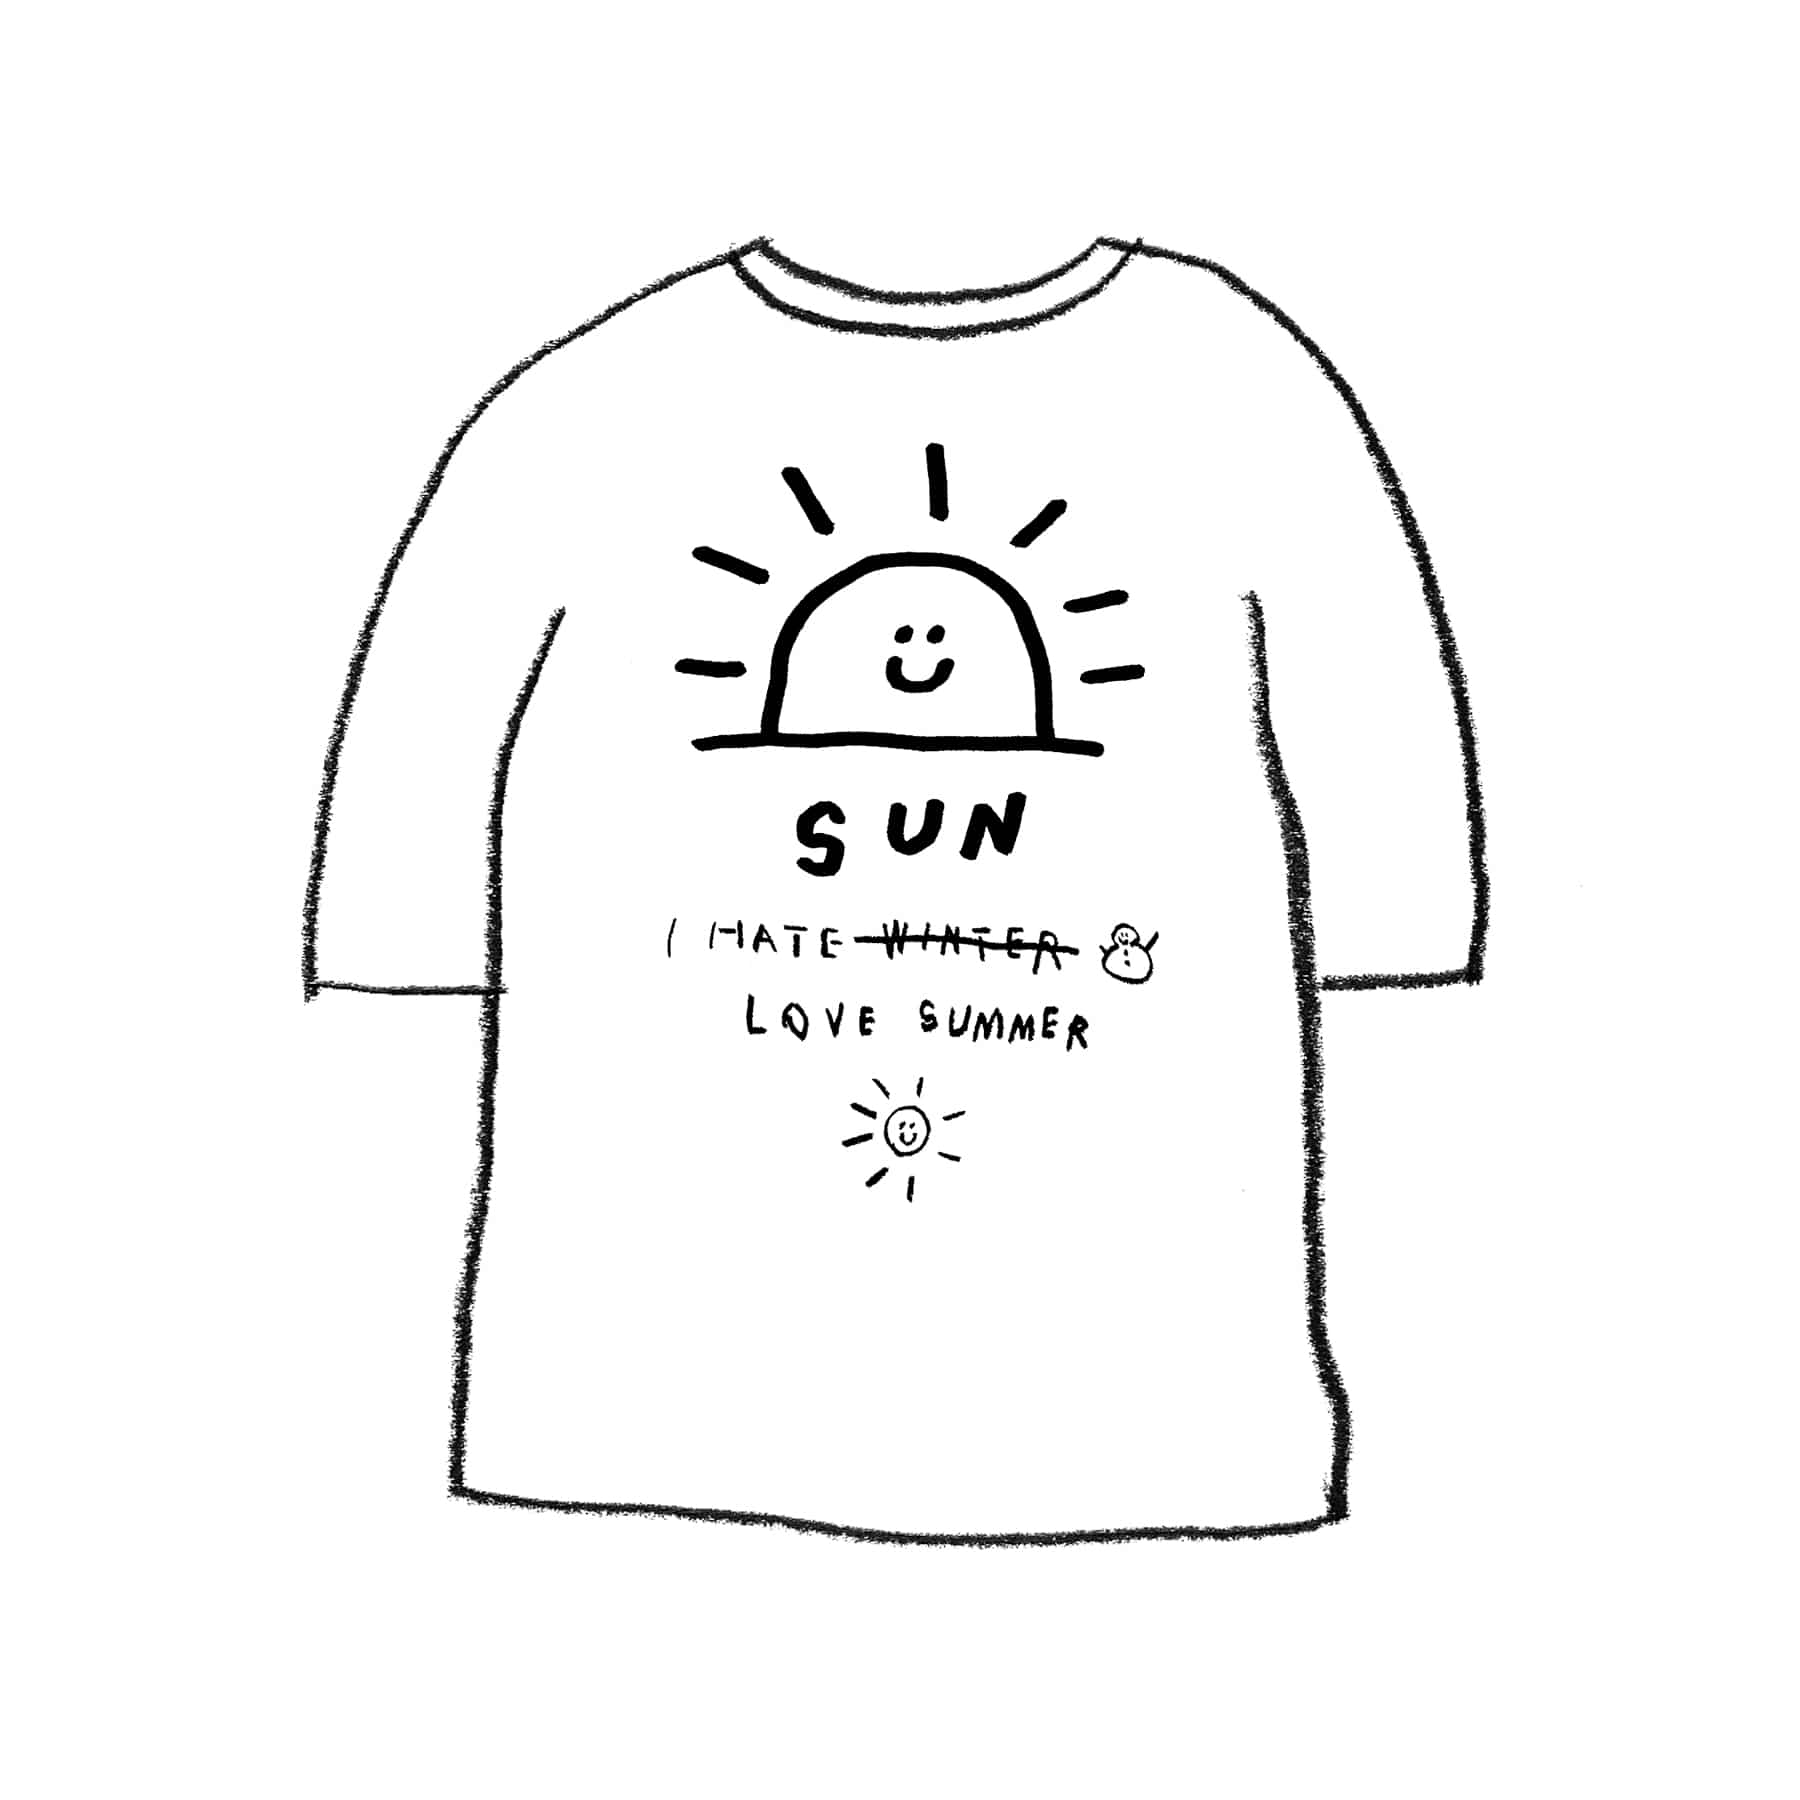 SUN 1/2 T-SHIRT